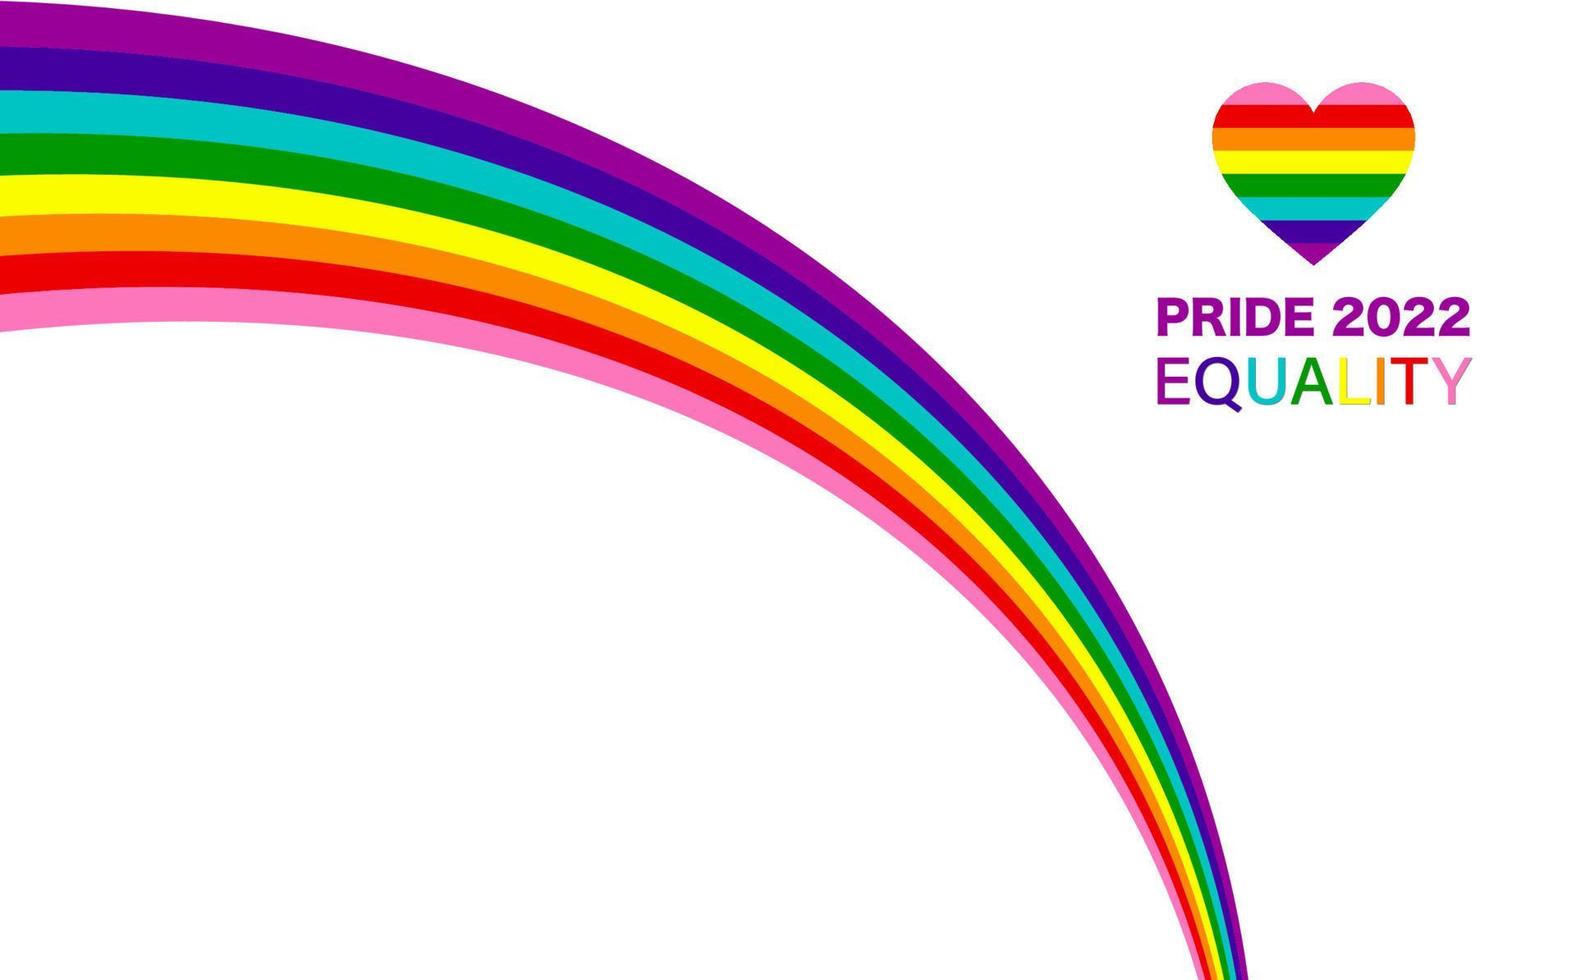 modèle lgbtqia de drapeau arc-en-ciel vague gay pride 2022. égalité, inclusivité. bannière de fierté avec le signe du drapeau lgbt. mois de la fierté. vecteur de bordure de cadre d'élément de design coloré isolé sur fond blanc